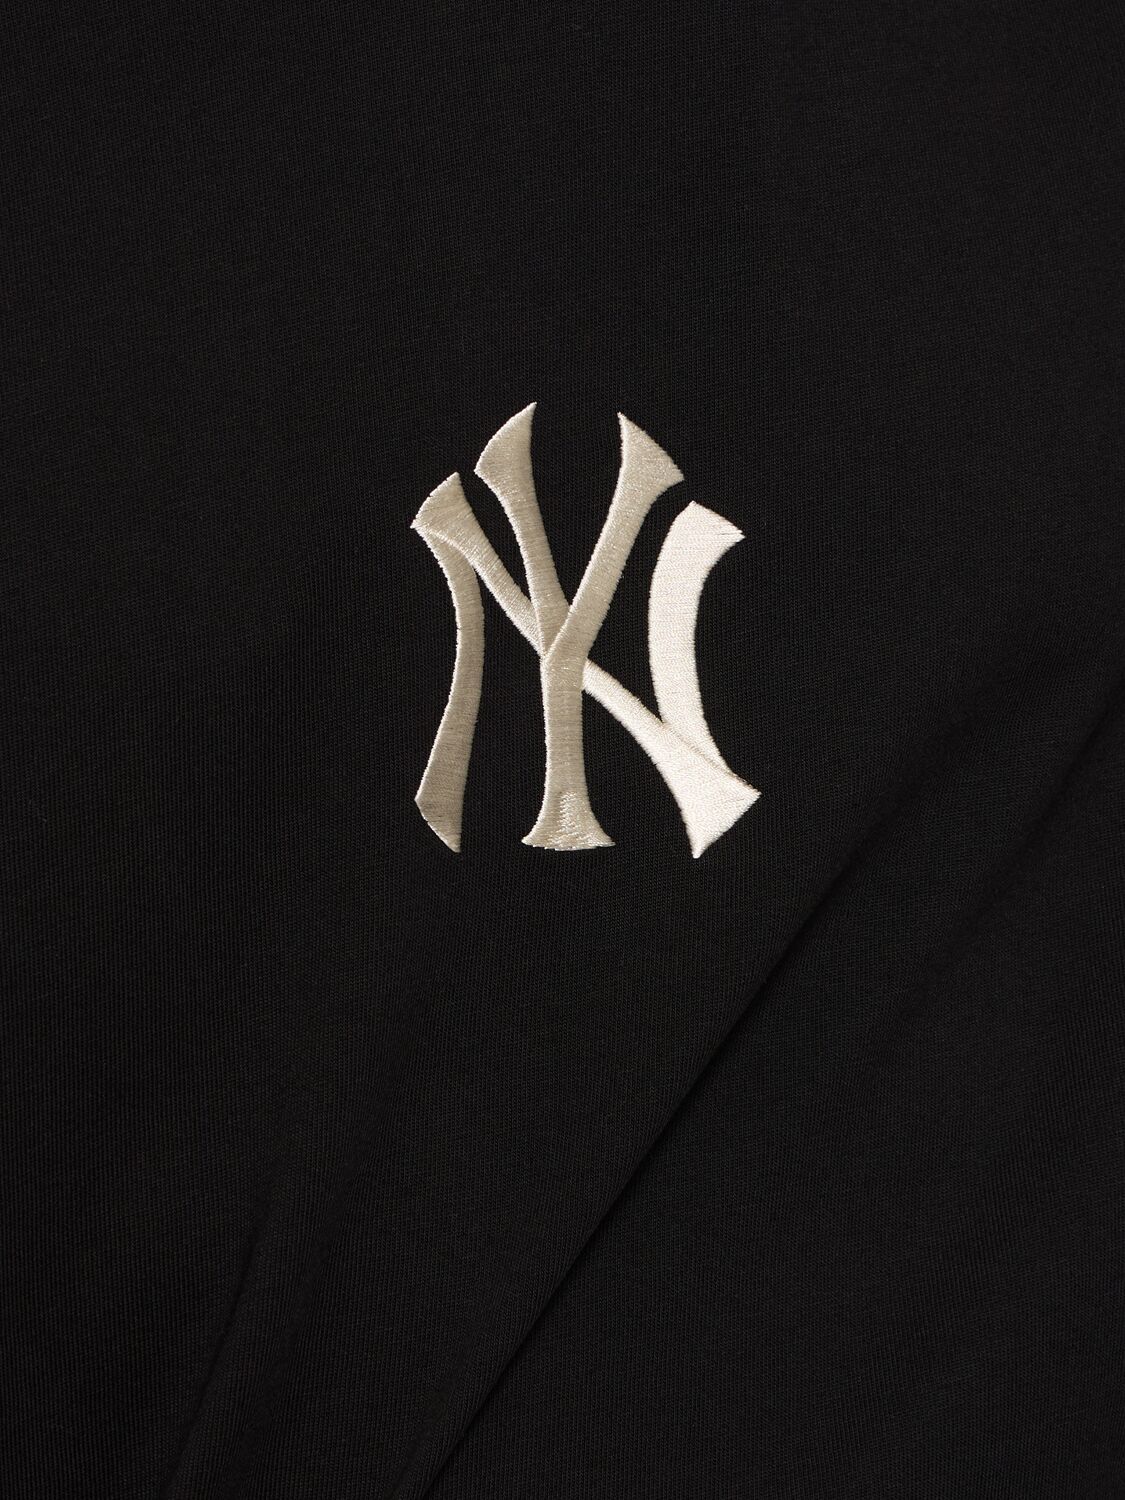 NY YANKEES MLB WORD SERIES T恤